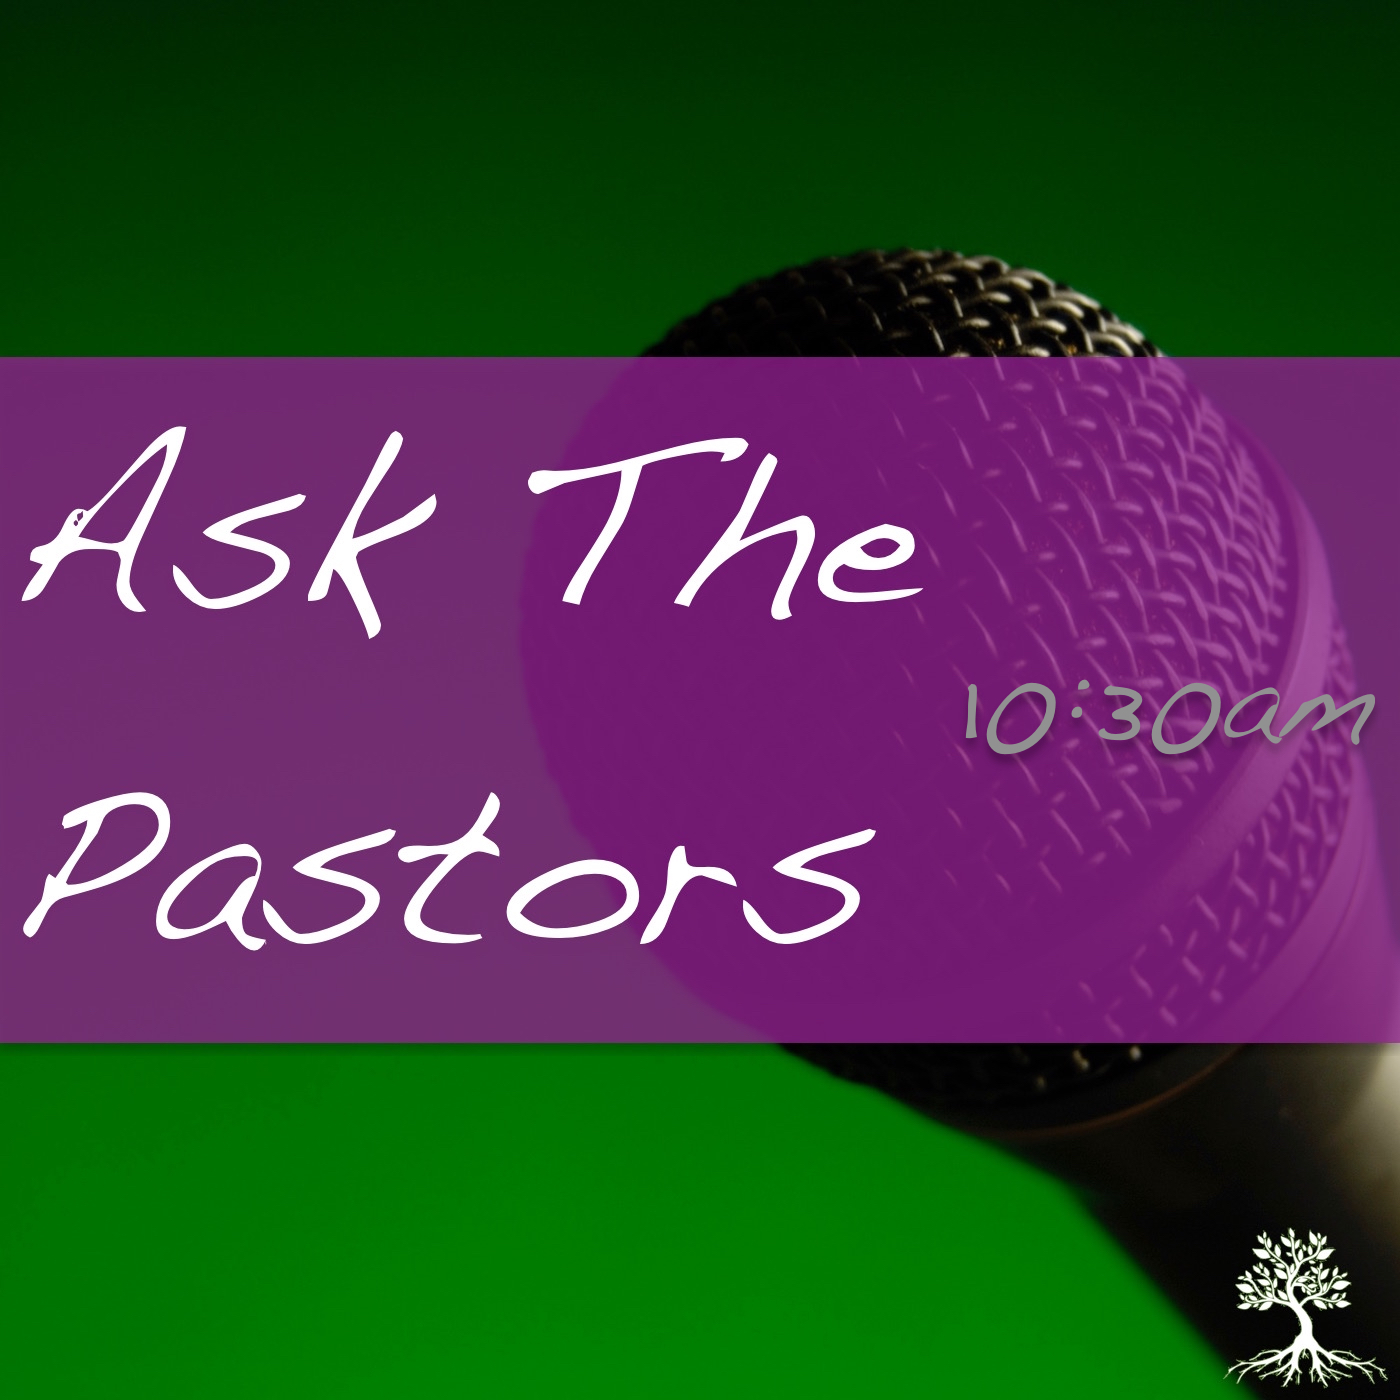 Ask The Pastors (10:30am 11/19/17)